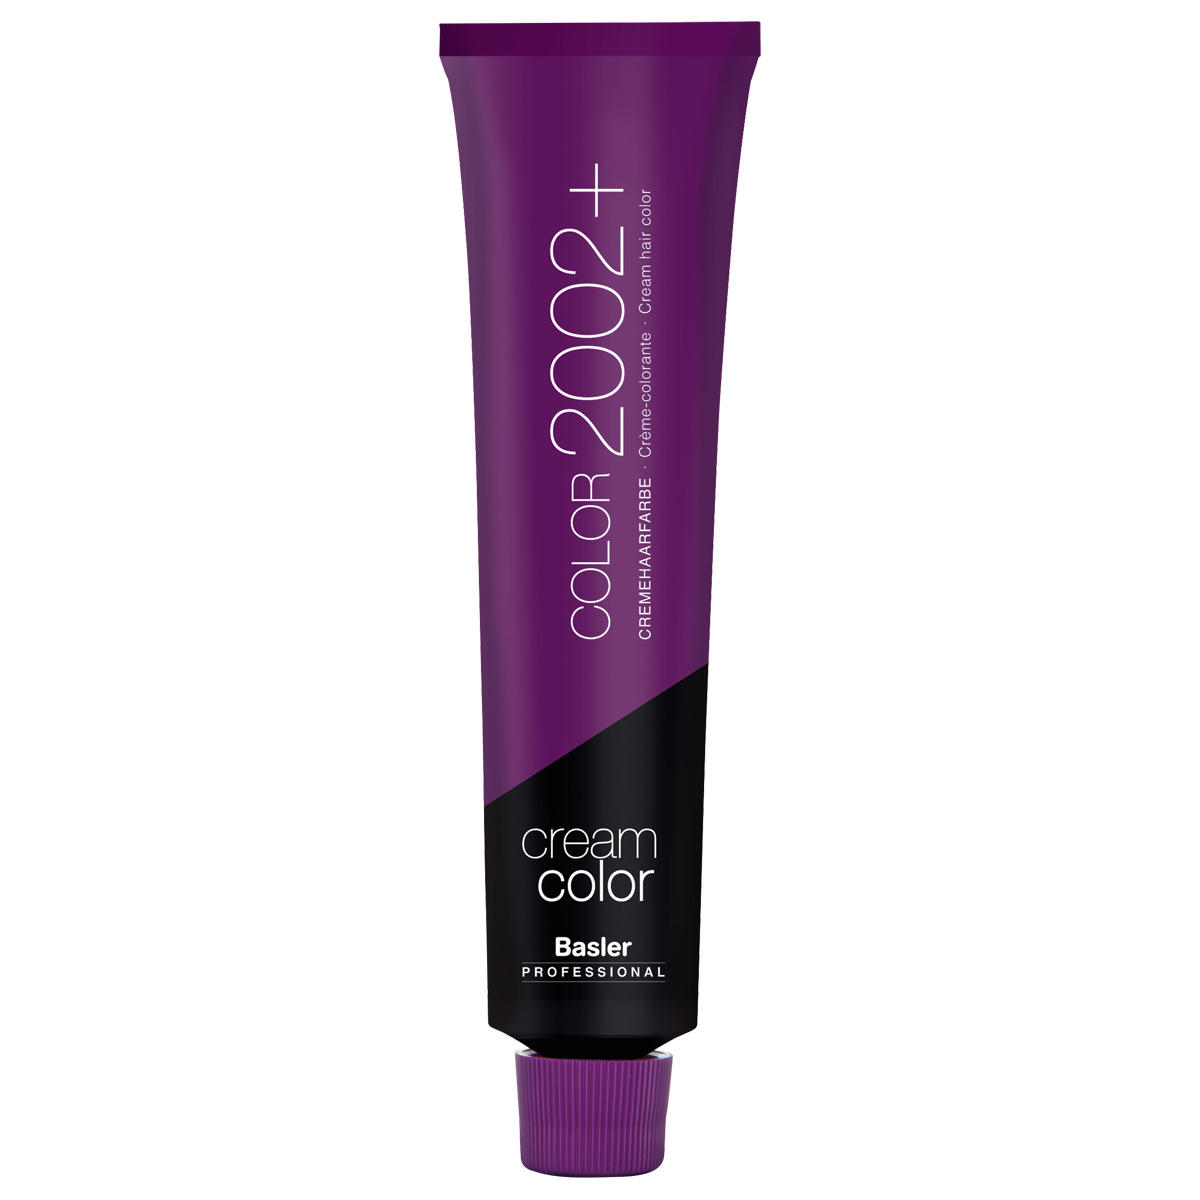 Basler cream hair colour 9/6 light blond violet, tube 60 ml - 1